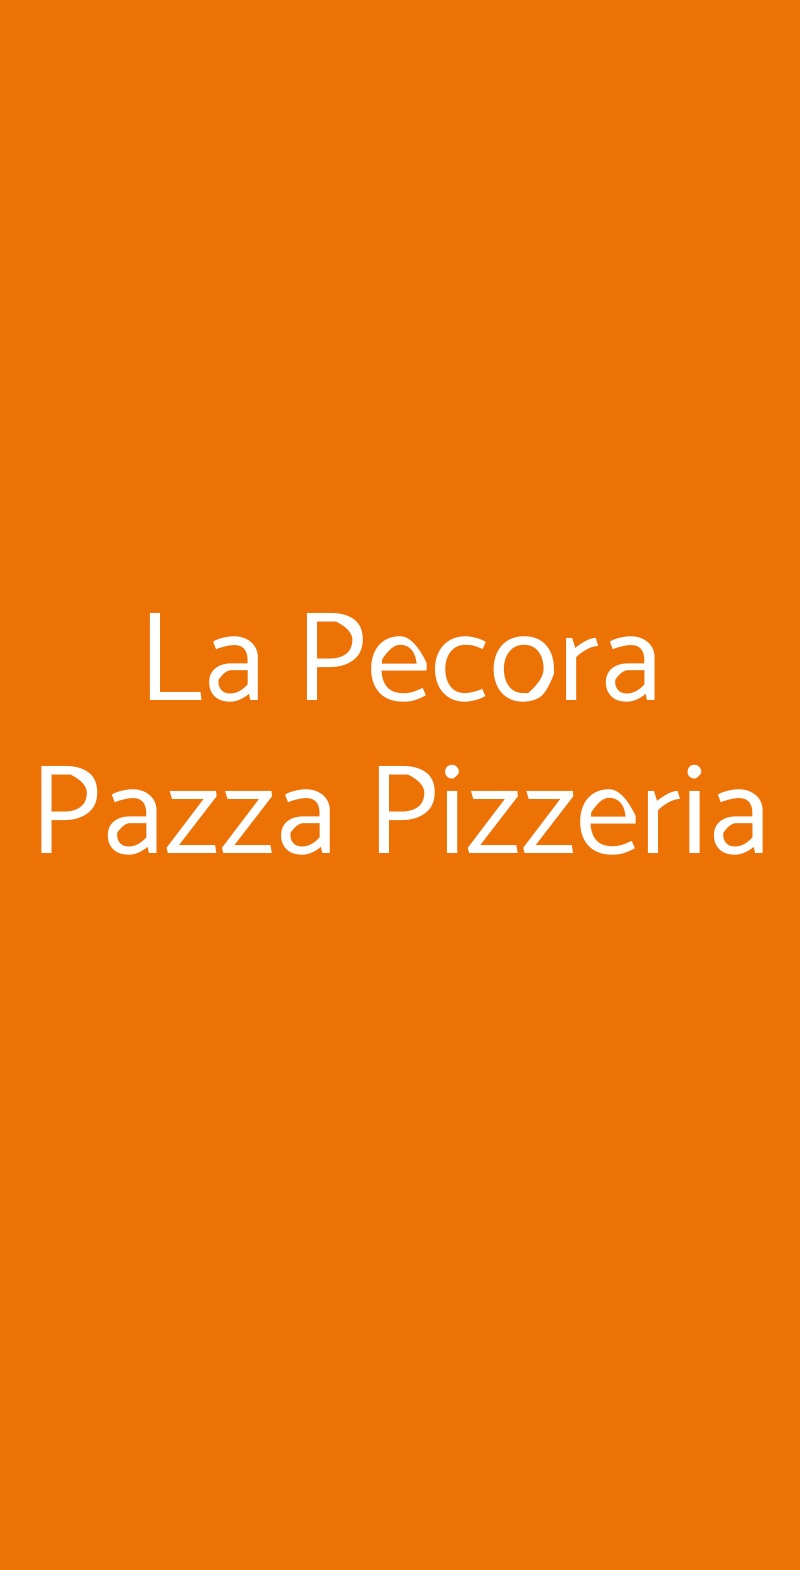 La Pecora Pazza Pizzeria Roma menù 1 pagina